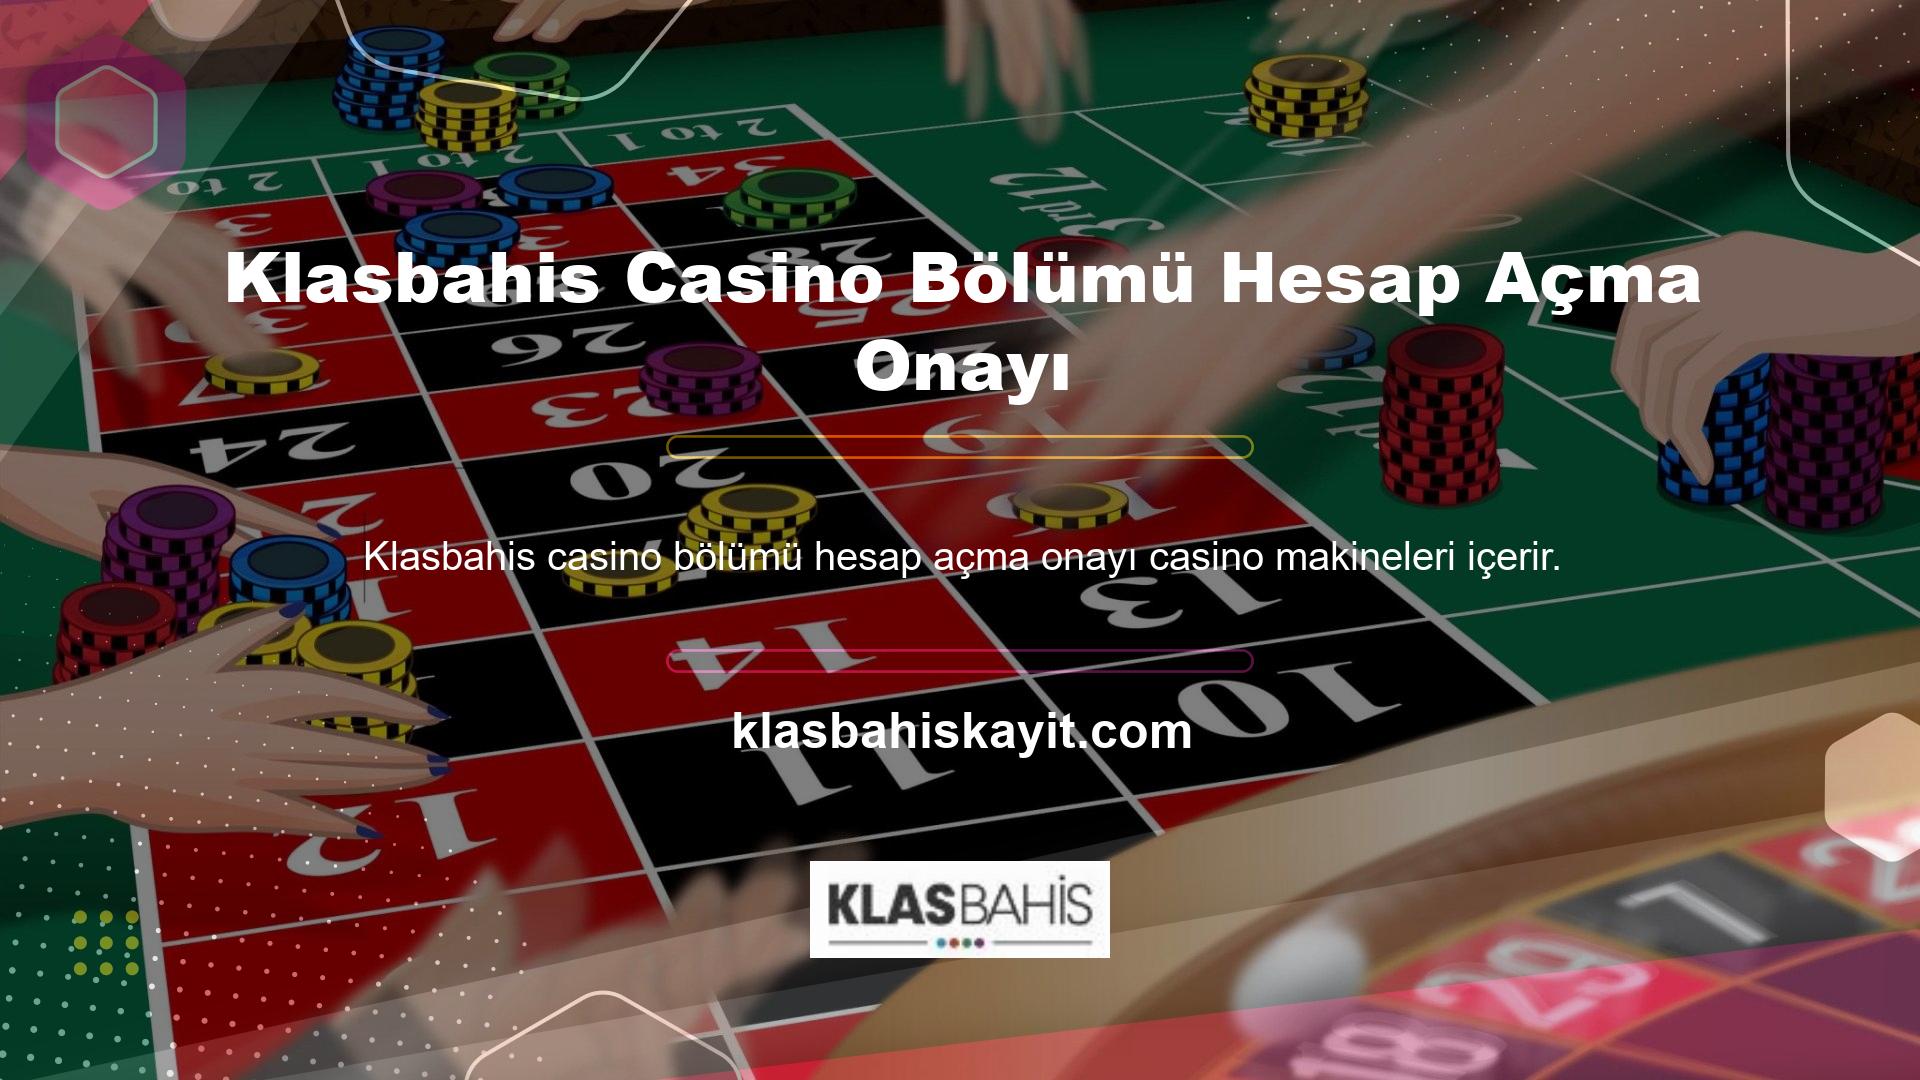 Bu bölümdeki slot makineleri Klasbahis casino tutkunları arasında popülerdir